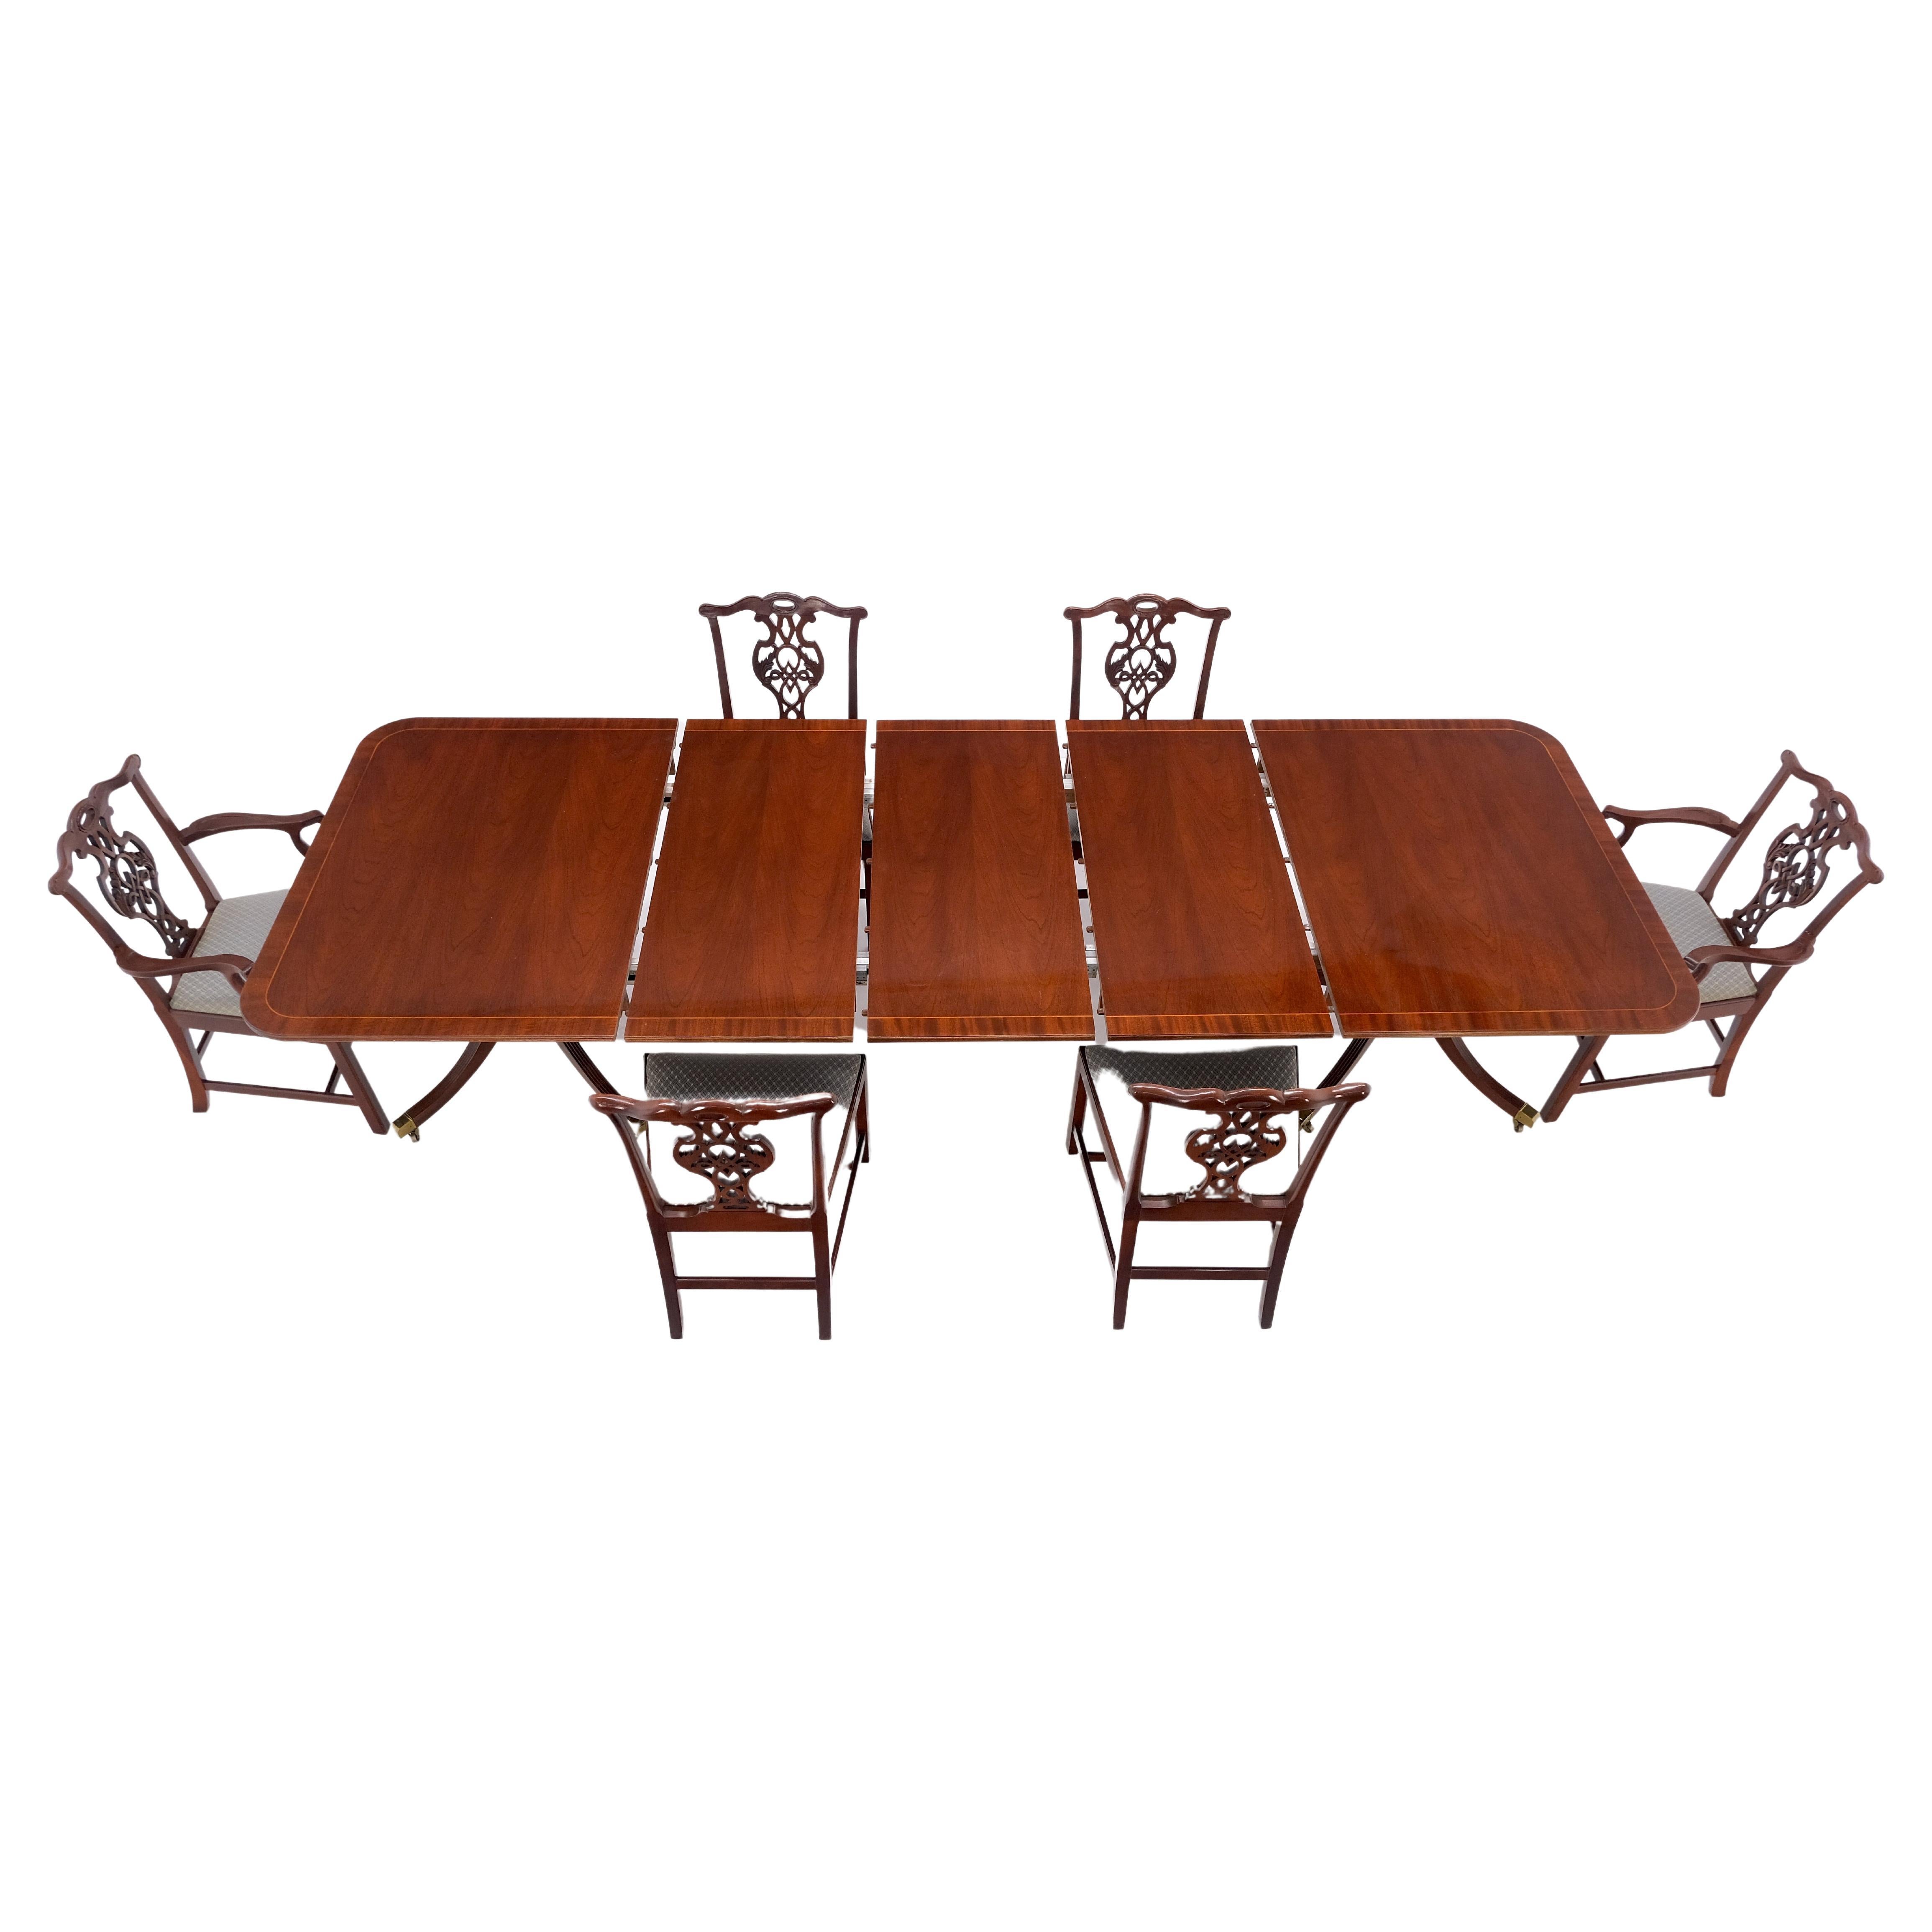 Table de salle à manger à bandes en acajou de la collection Baker Charleston de 6 chaises étonnantes !